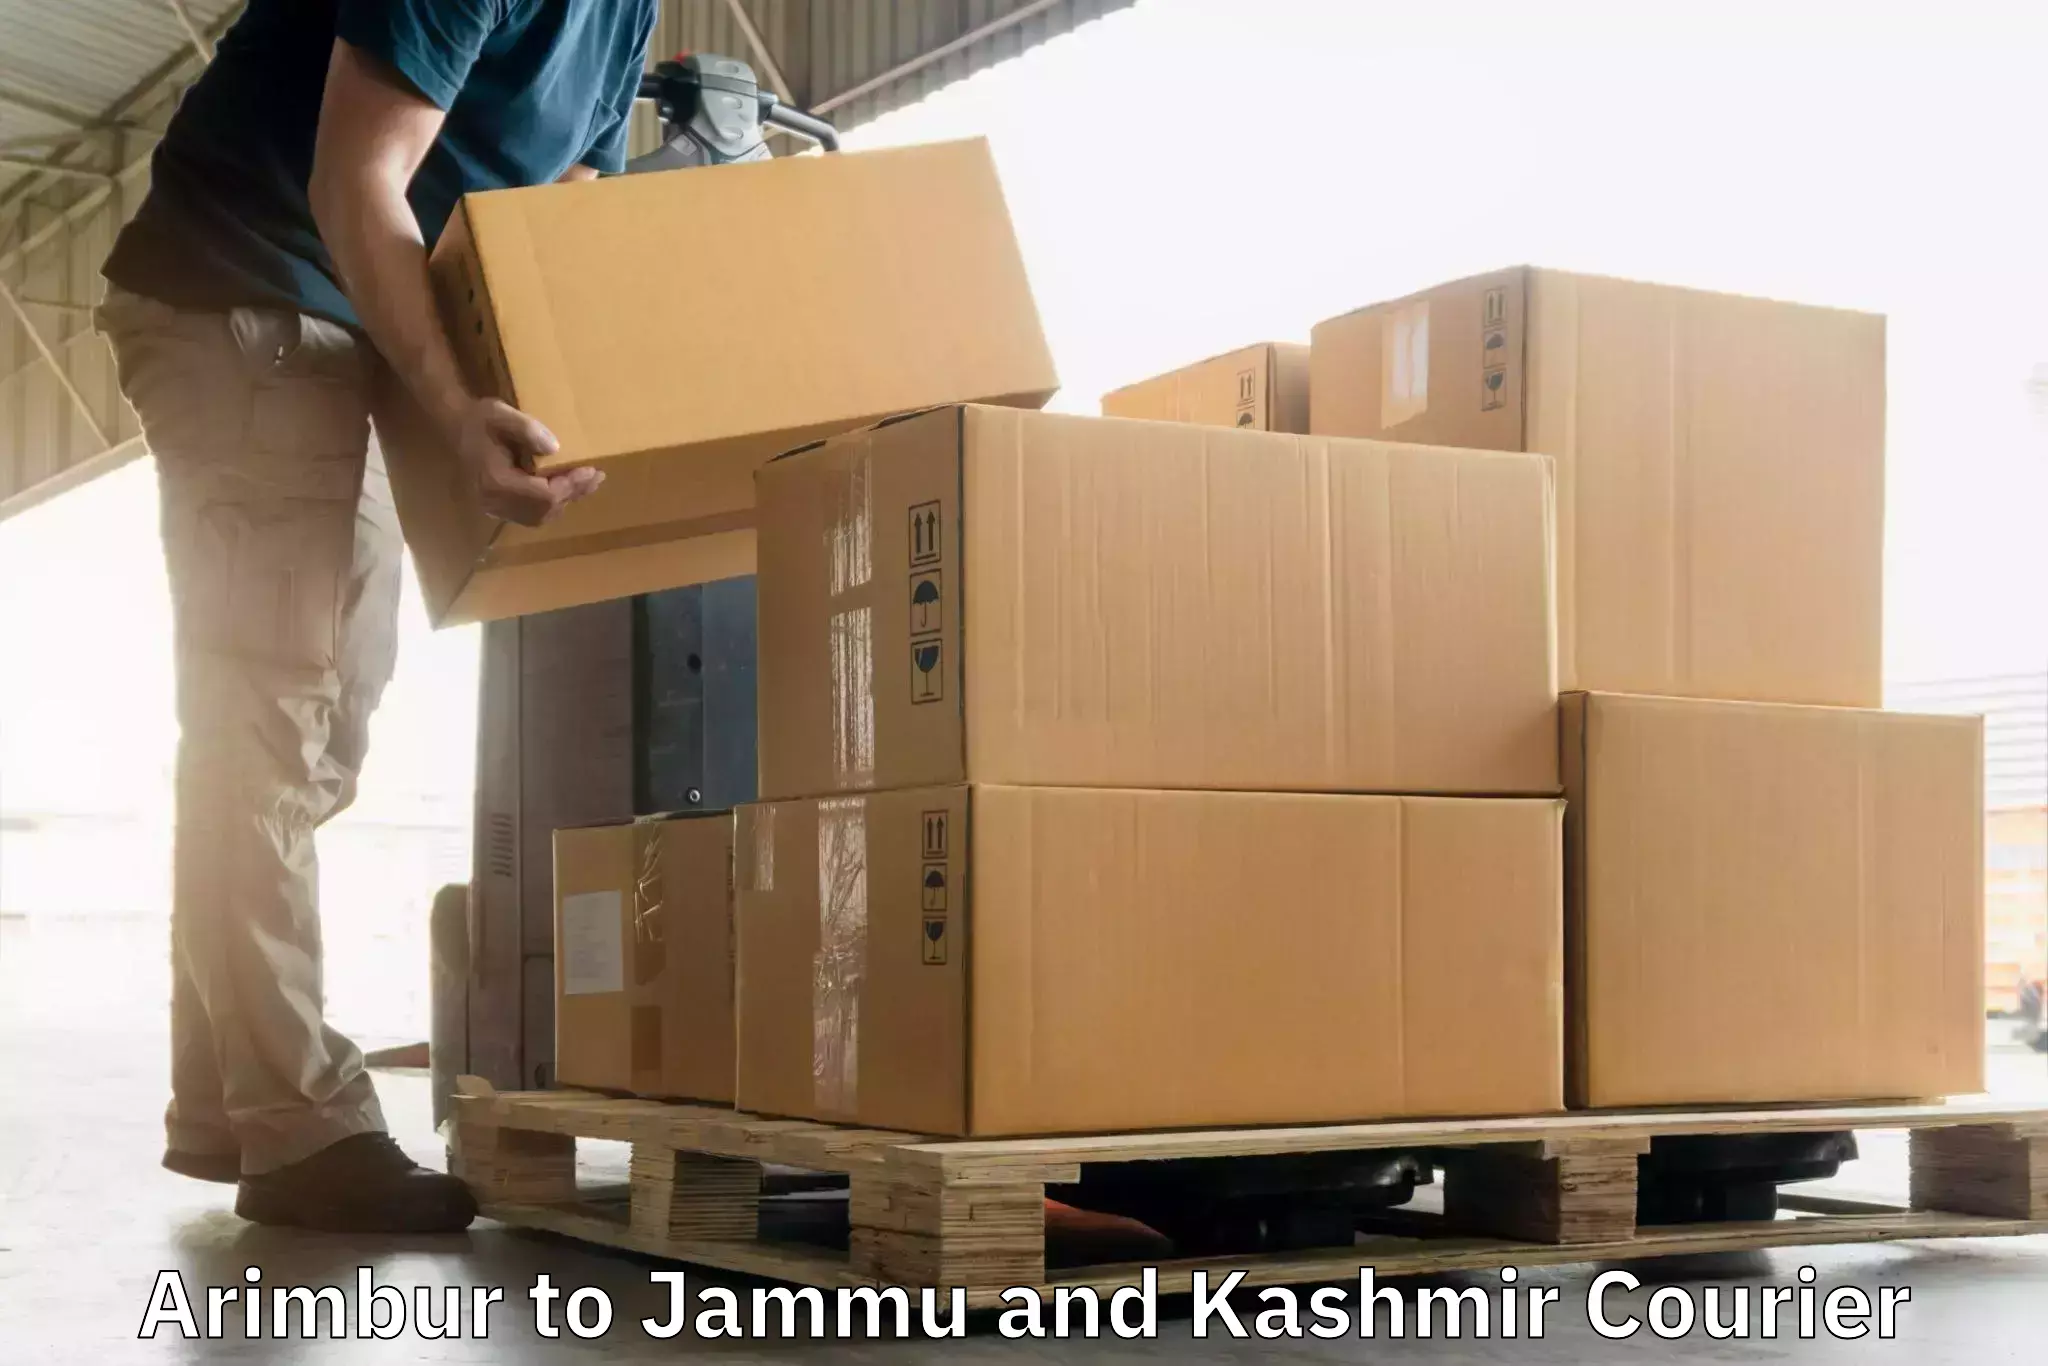 Affordable parcel service Arimbur to Jammu and Kashmir